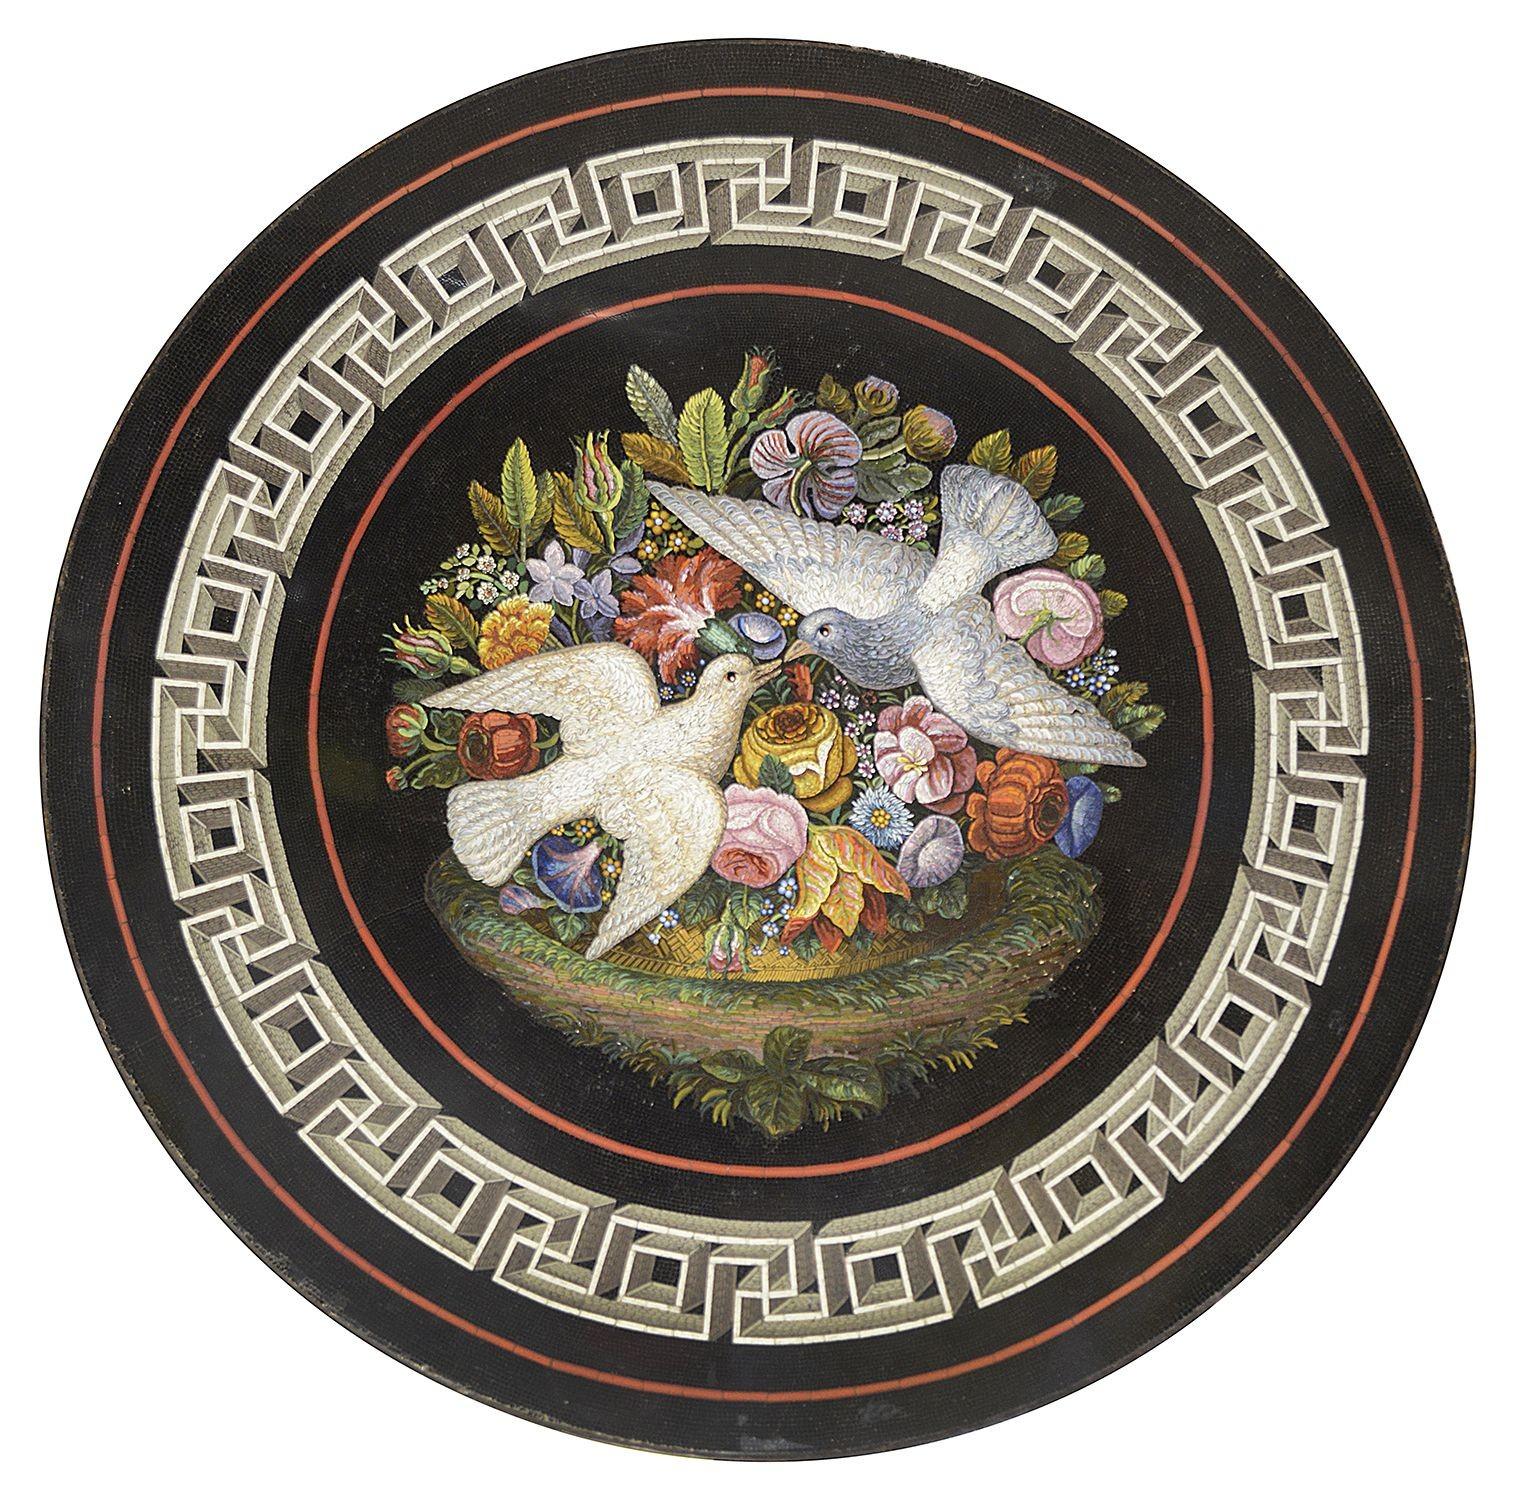 Guéridon de qualité en marbre micro-mosaïque italien du 19ème siècle, représentant une paire de colombes parmi des fleurs exotiques avec une bordure à motif grec classique, placé dans cette merveilleuse table en bois doré sculptée à la main, avec